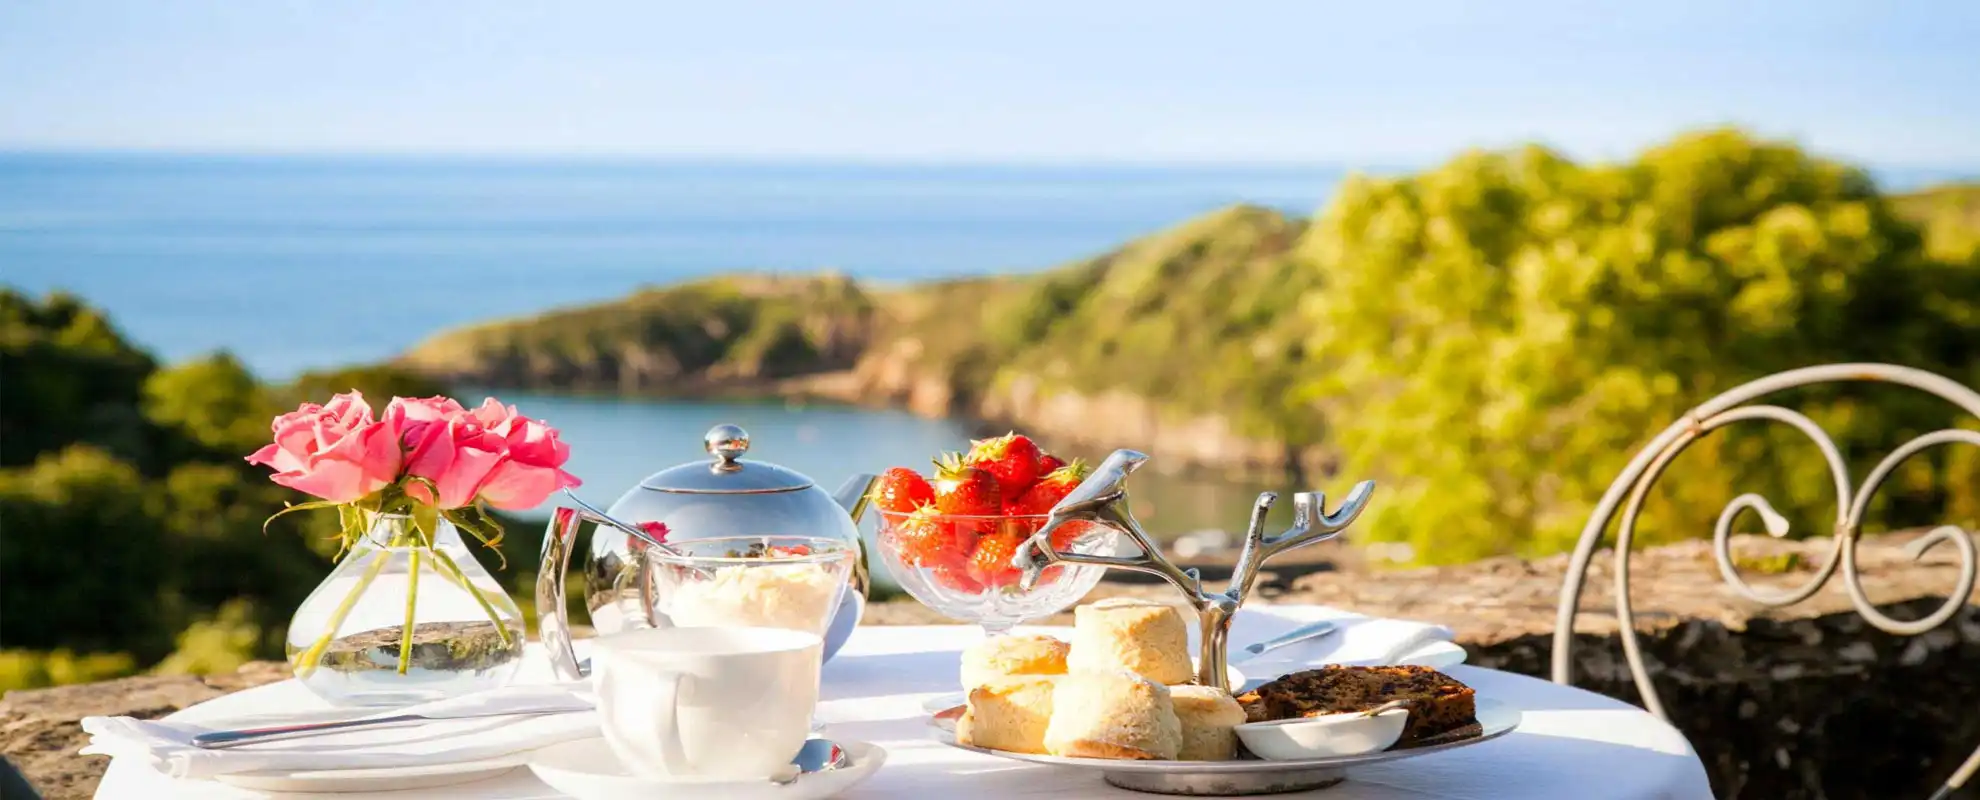 Best breakfast sea view in Pembrokeshire?